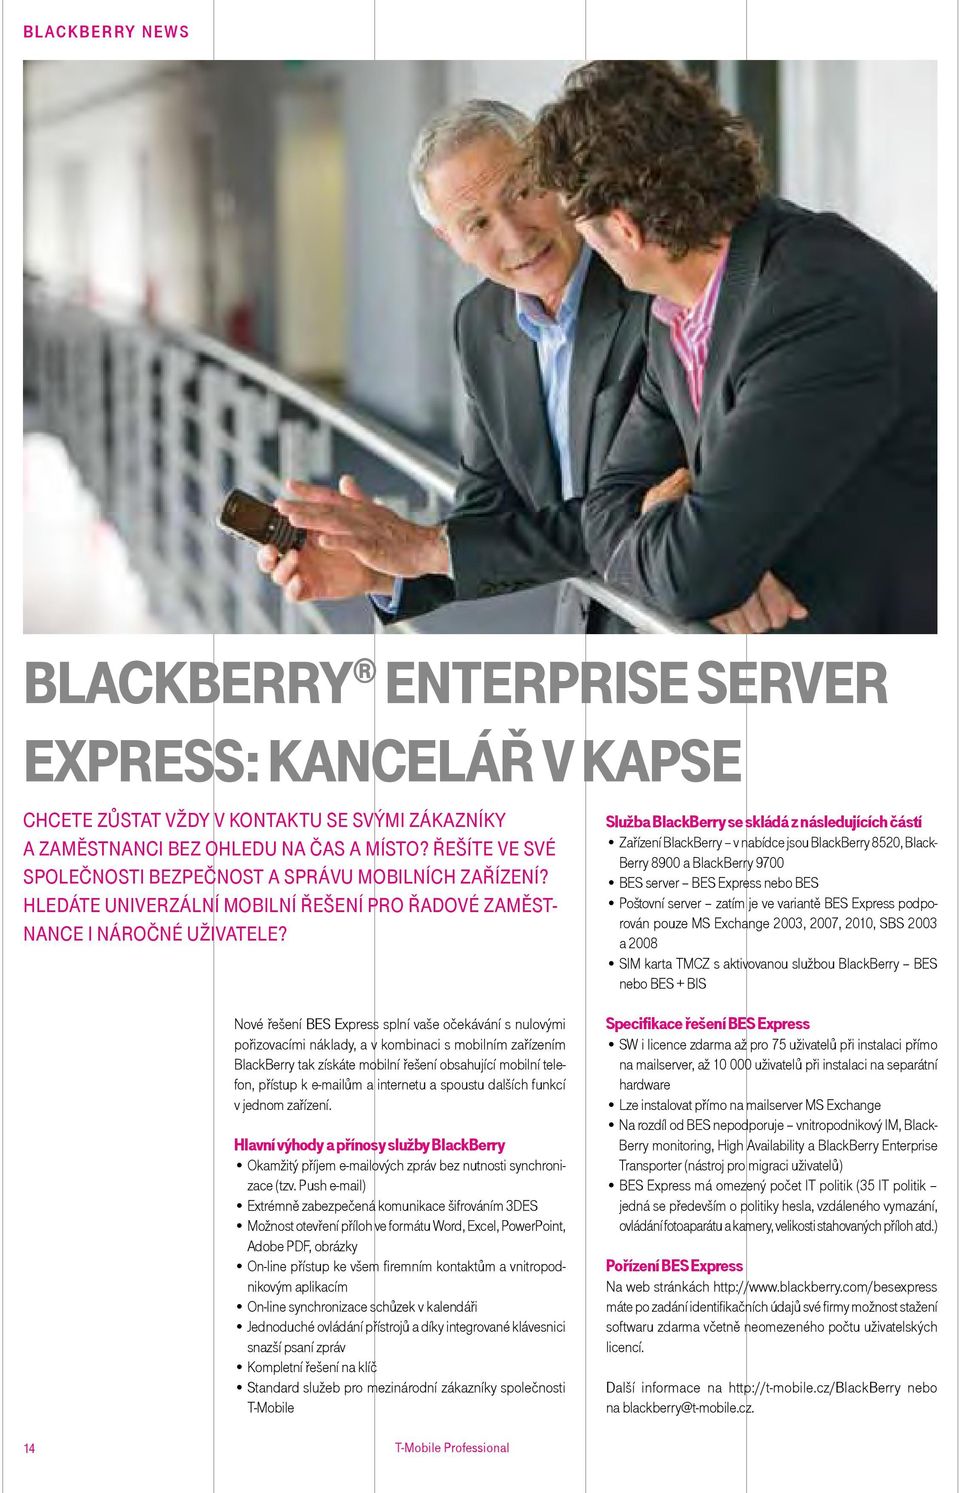 Služba BlackBerry se skládá z následujících částí zařízení BlackBerry v nabídce jsou BlackBerry 8520, Black- Berry 8900 a BlackBerry 9700 BES server BES Express nebo BES poštovní server zatím je ve